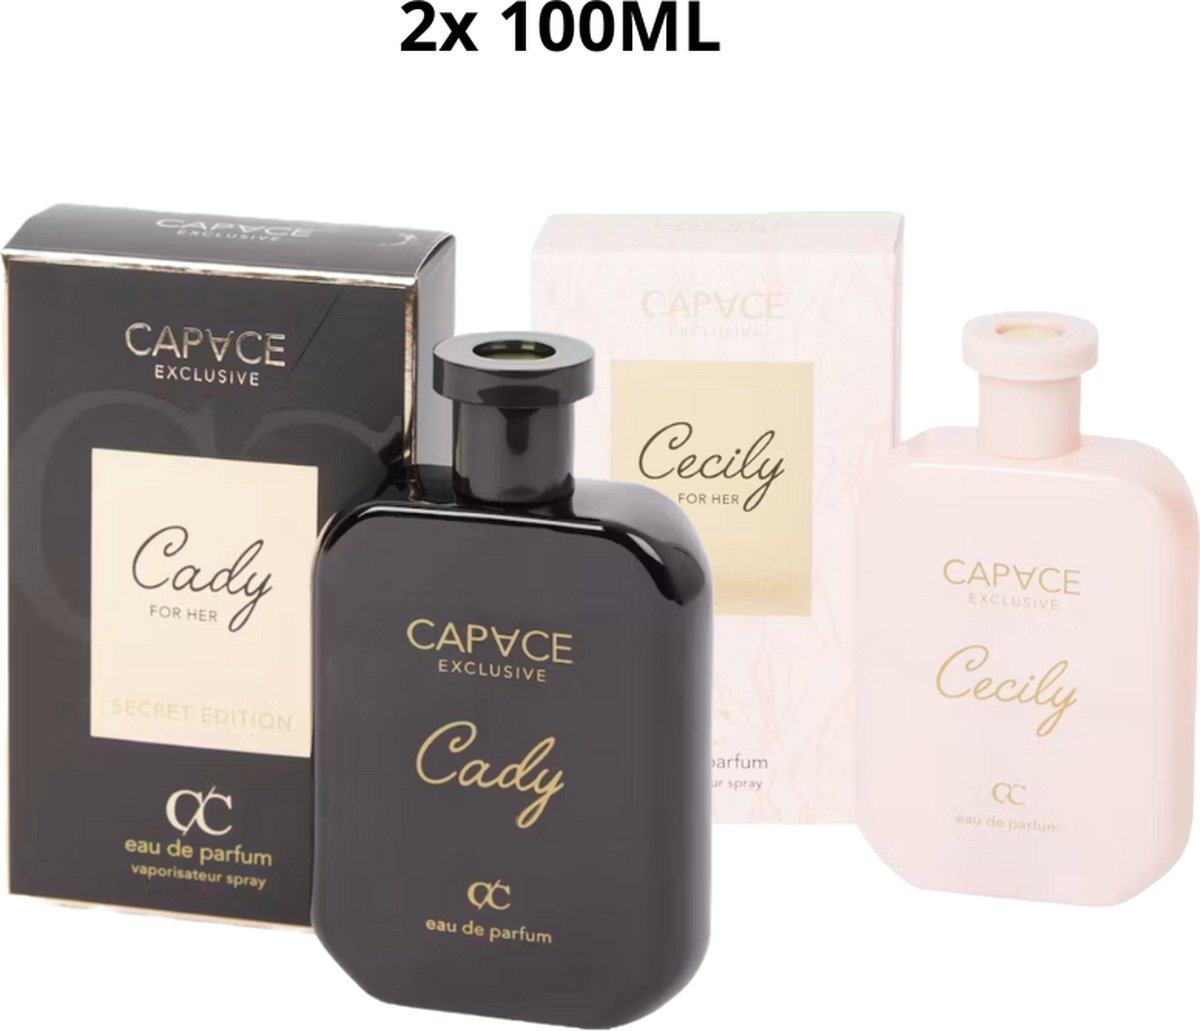 Capace Exclusive - Cady&Cecily - 2x 100ML - Giftset - Vrouwenparfum - Parfum - Eau de parfum - Geschenk - Gratis verzending